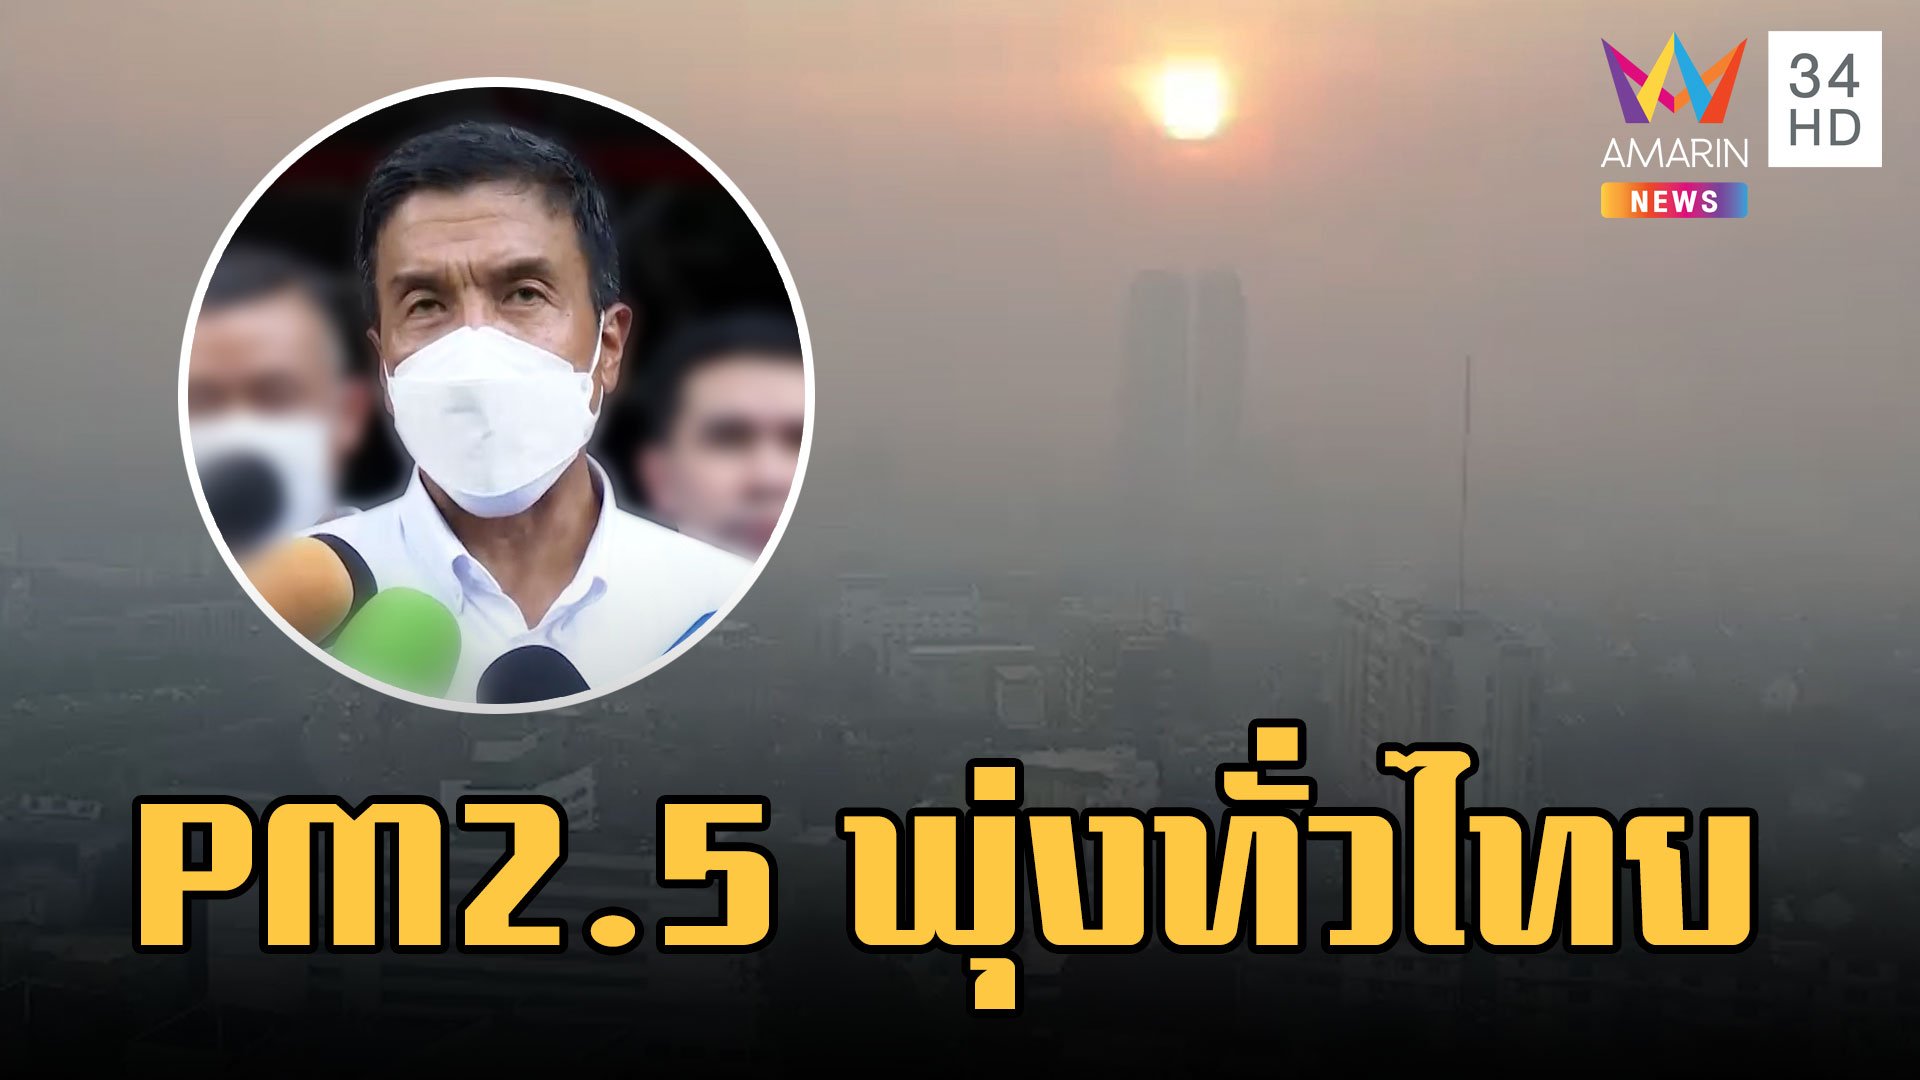 "ชัชชาติ" ย้ำแก้ PM 2.5 พุ่ง เกินกำลังผู้ว่าฯ ไม่ดีขึ้นวอนเอกชนเวิร์คฟอร์มโฮม | ข่าวอรุณอมรินทร์ | 11 มี.ค. 66 | AMARIN TVHD34